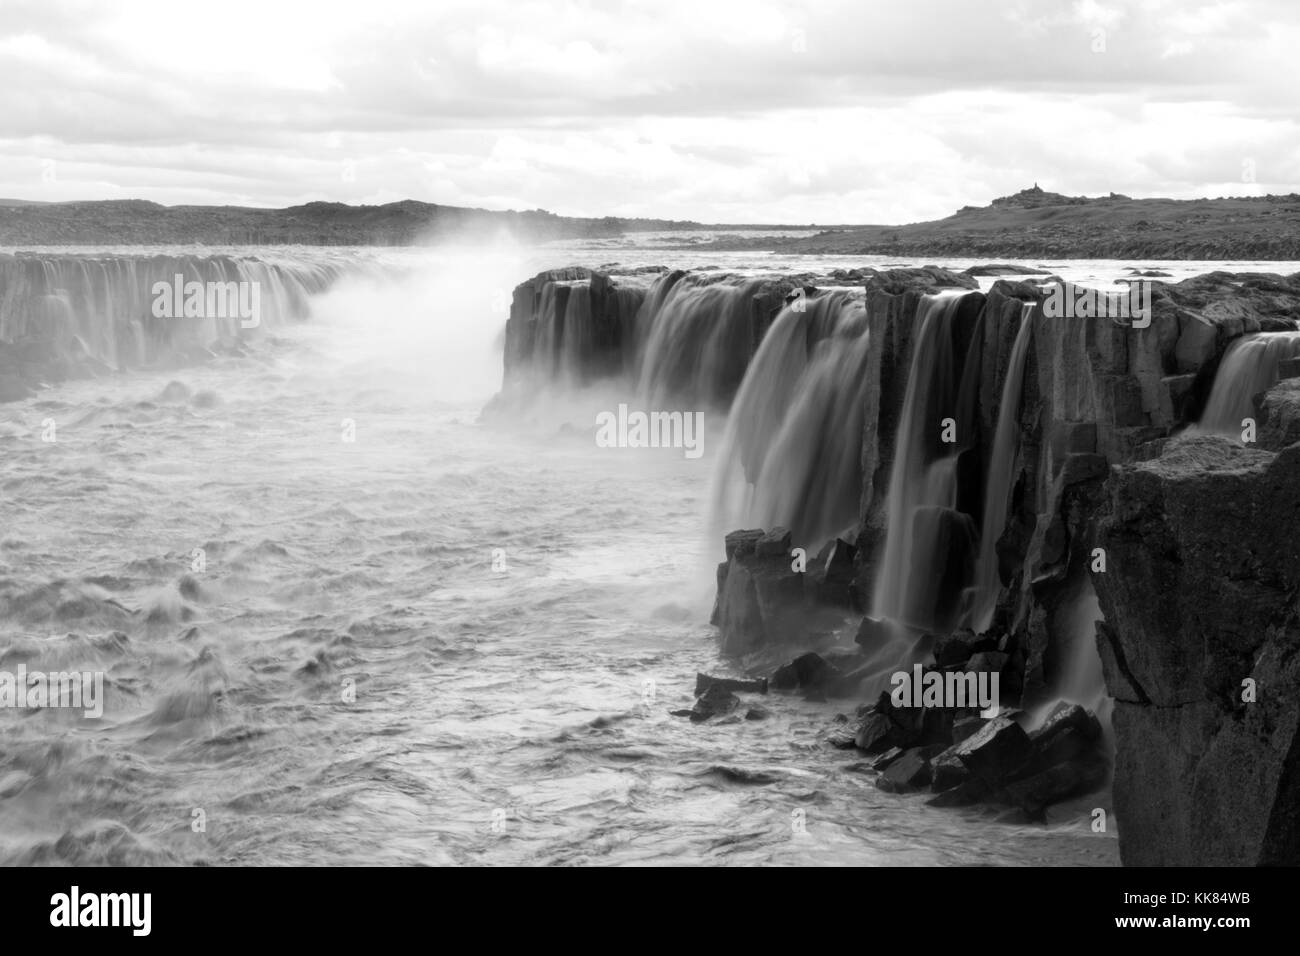 Islanda cascate in bianco e nero, scena drammatica con un look metaforica Foto Stock